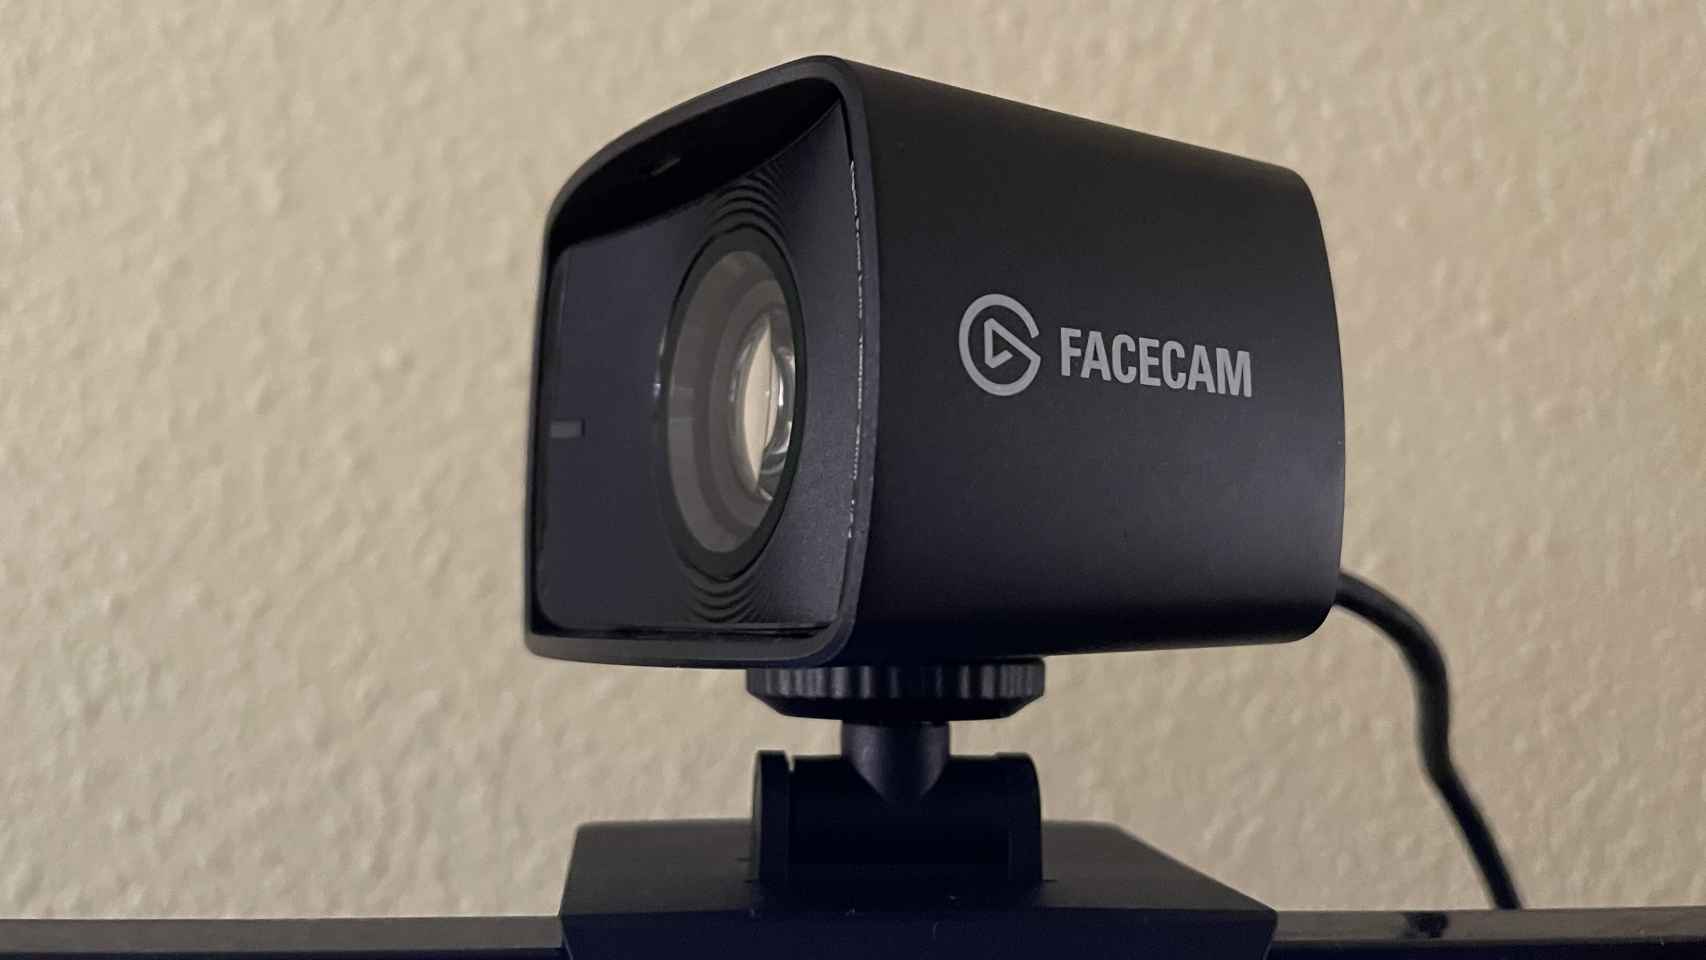 Elgato Facecam